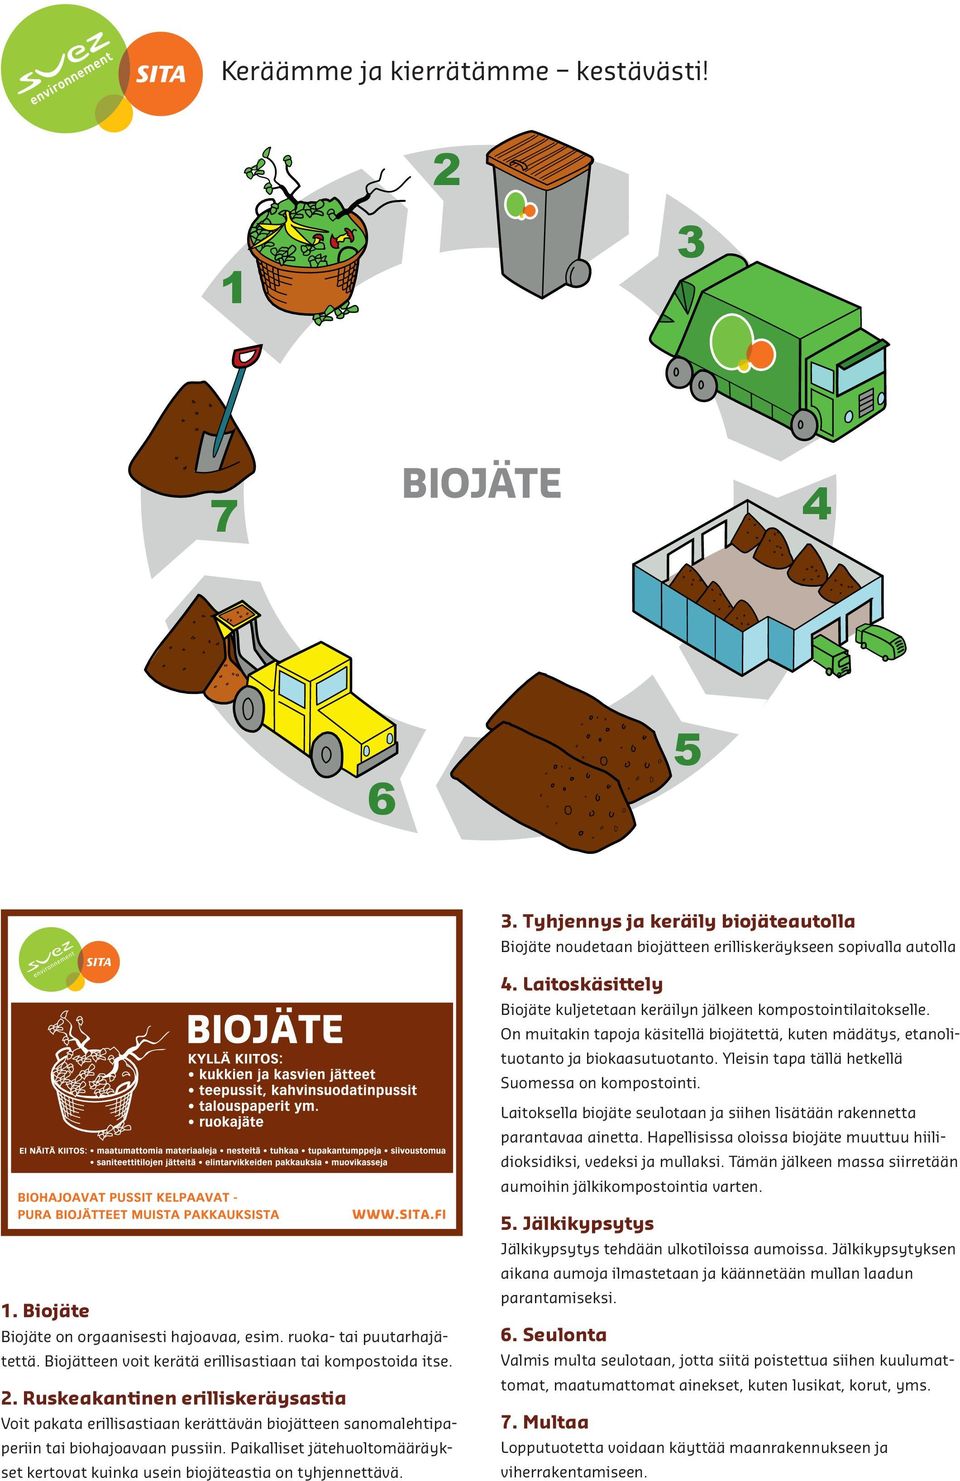 Laitoksella biojäte seulotaan ja siihen lisätään rakennetta parantavaa ainetta. Hapellisissa oloissa biojäte muuttuu hiilidioksidiksi, vedeksi ja mullaksi.